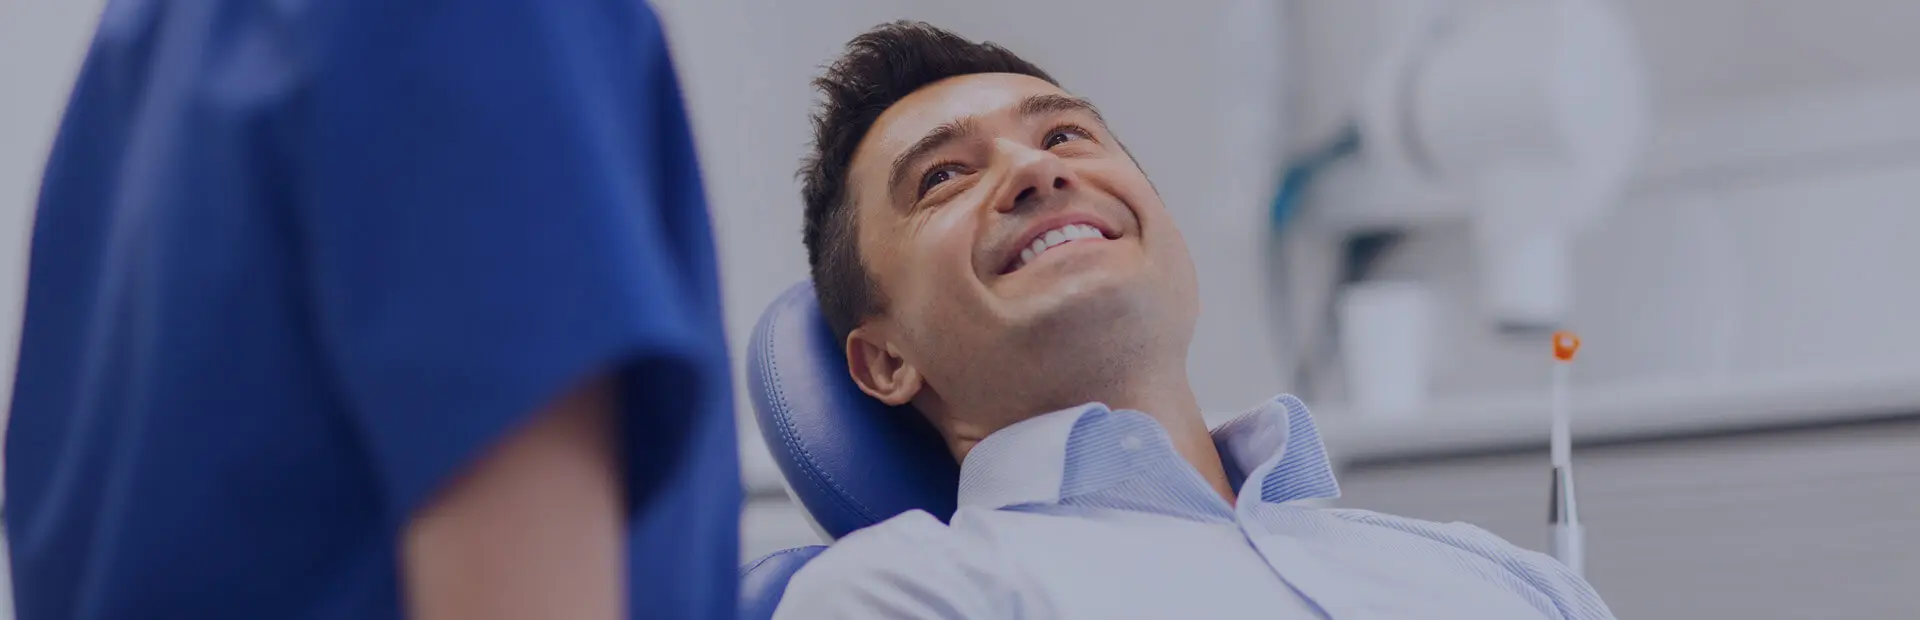 Ein Mann in den 30ern lächelt während einer Kontrolluntersuchung auf dem Zahnarztstuhl, während sein Zahnarzt ihm erklärt, dass blend-a-dent Haftcreme helfen kann, Prothesenwunden zu reduzieren.